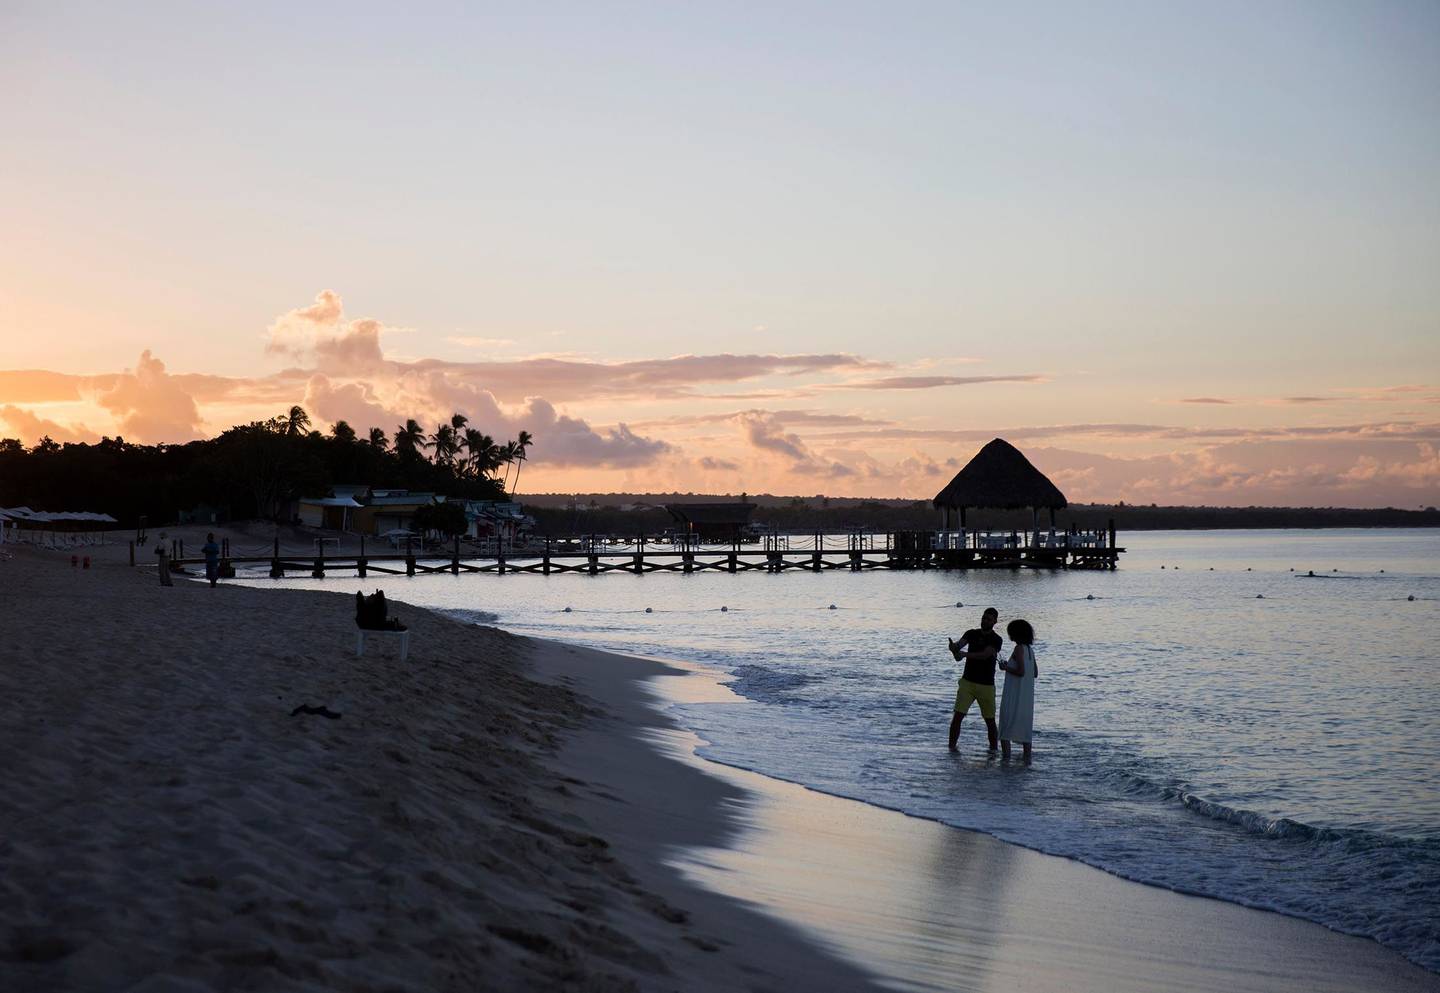 El polo turístico de Punta Cana posee  45800 habitaciones de hoteles